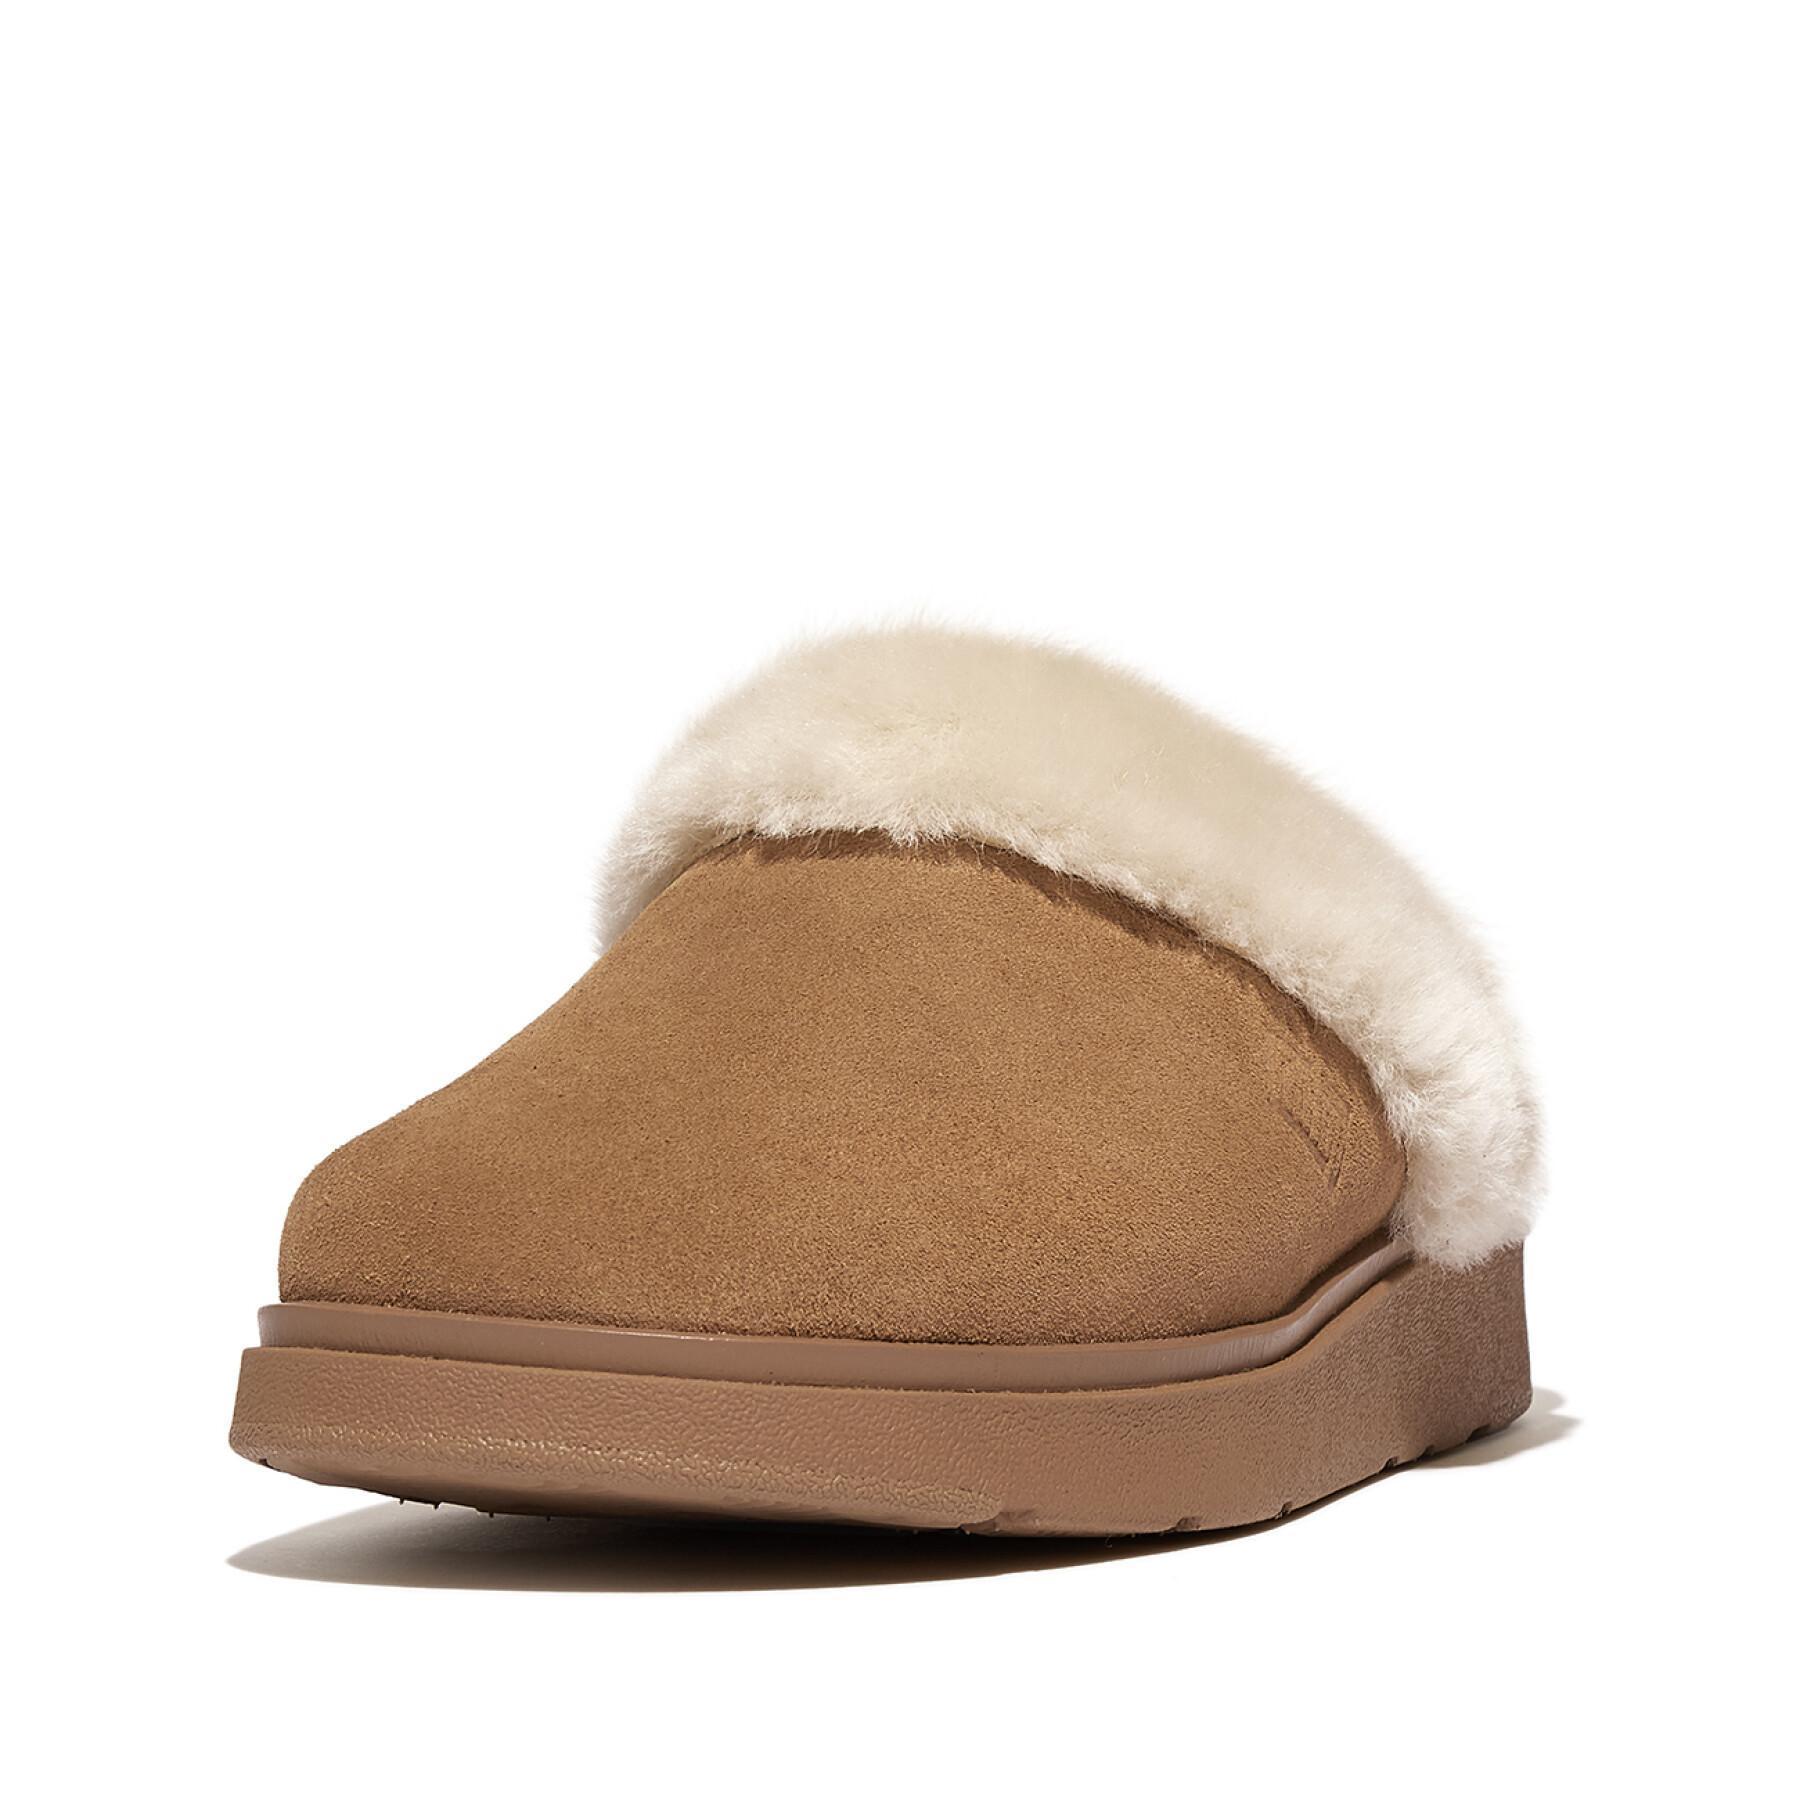 Women's suede slippers FitFlop Gen-Ff